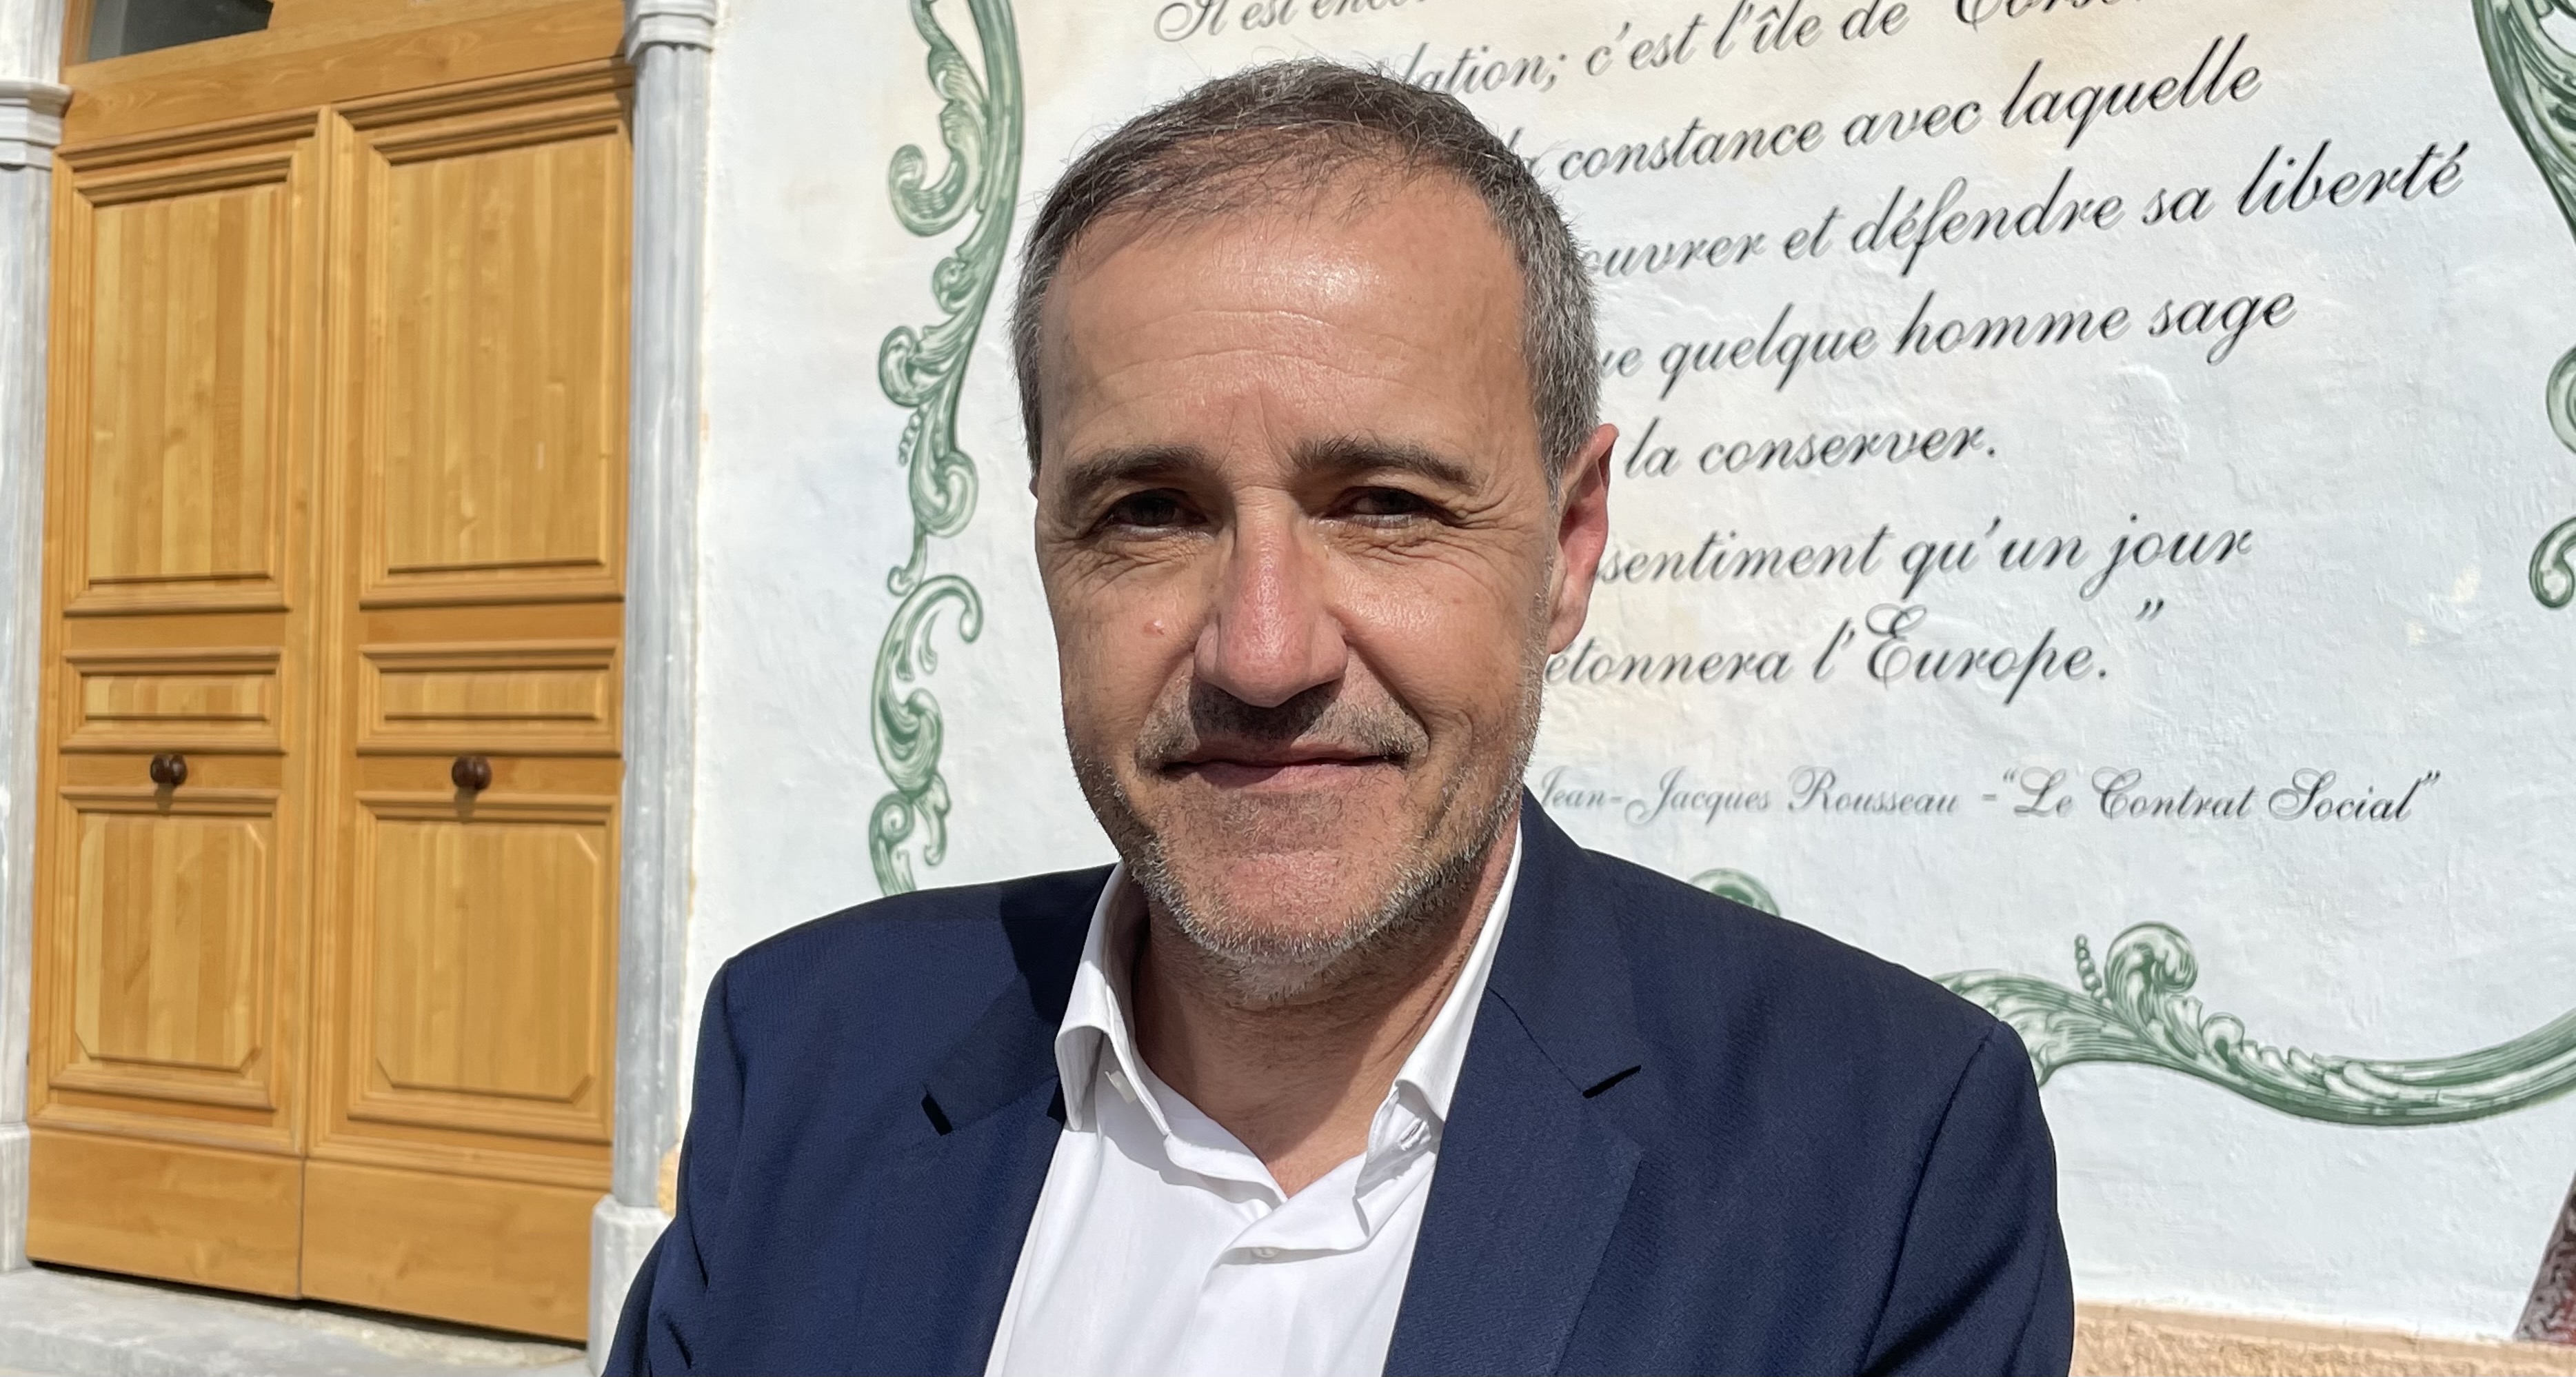 Jean-Guy Talamoni, président de l’Assemblée de Corse et chef de file de la liste Corsica Libera aux élections territoriales des 20 et 27 juin prochain. Photo CNI.